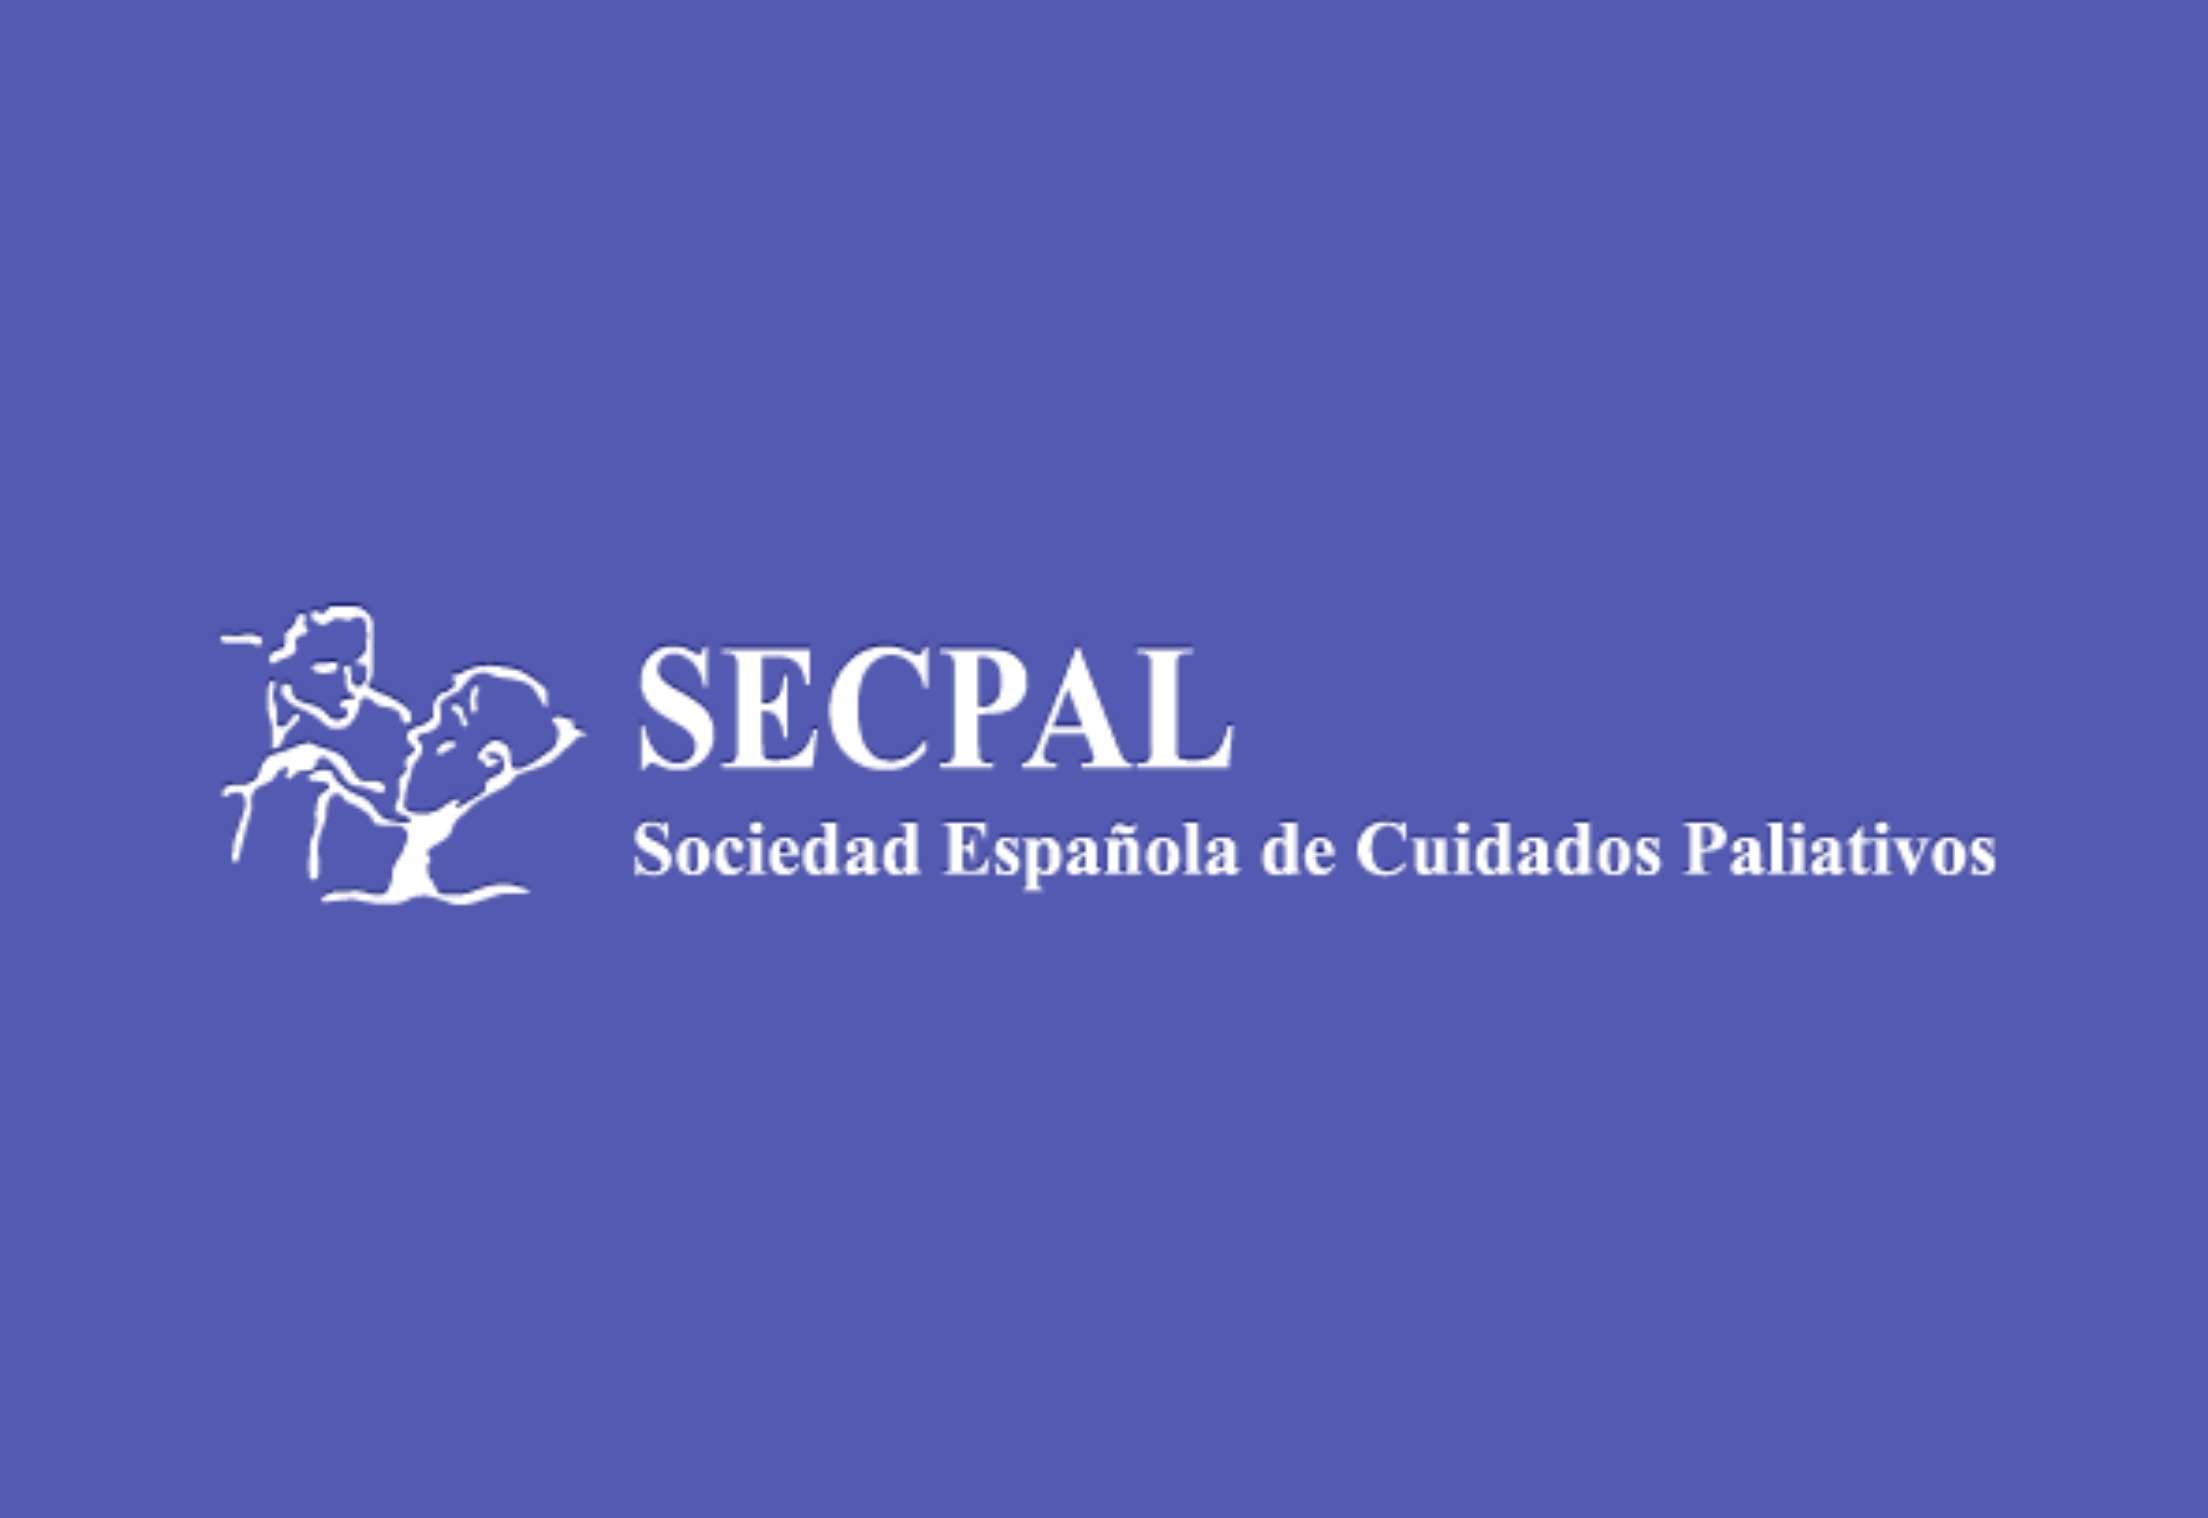 Sociedad Española de Cuidados Paliativos